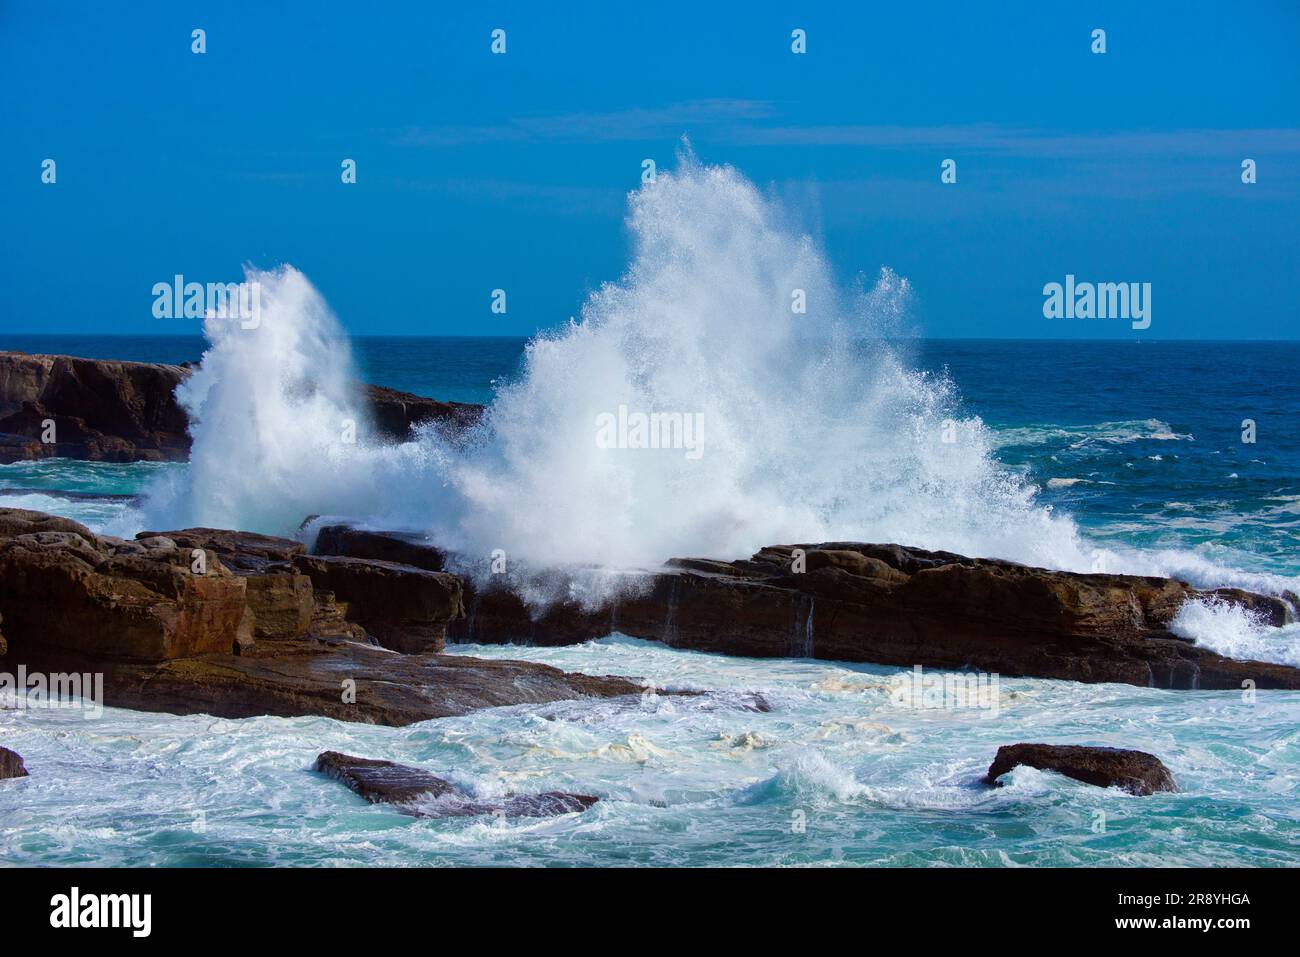 Senjojiki coast and the waves Stock Photo